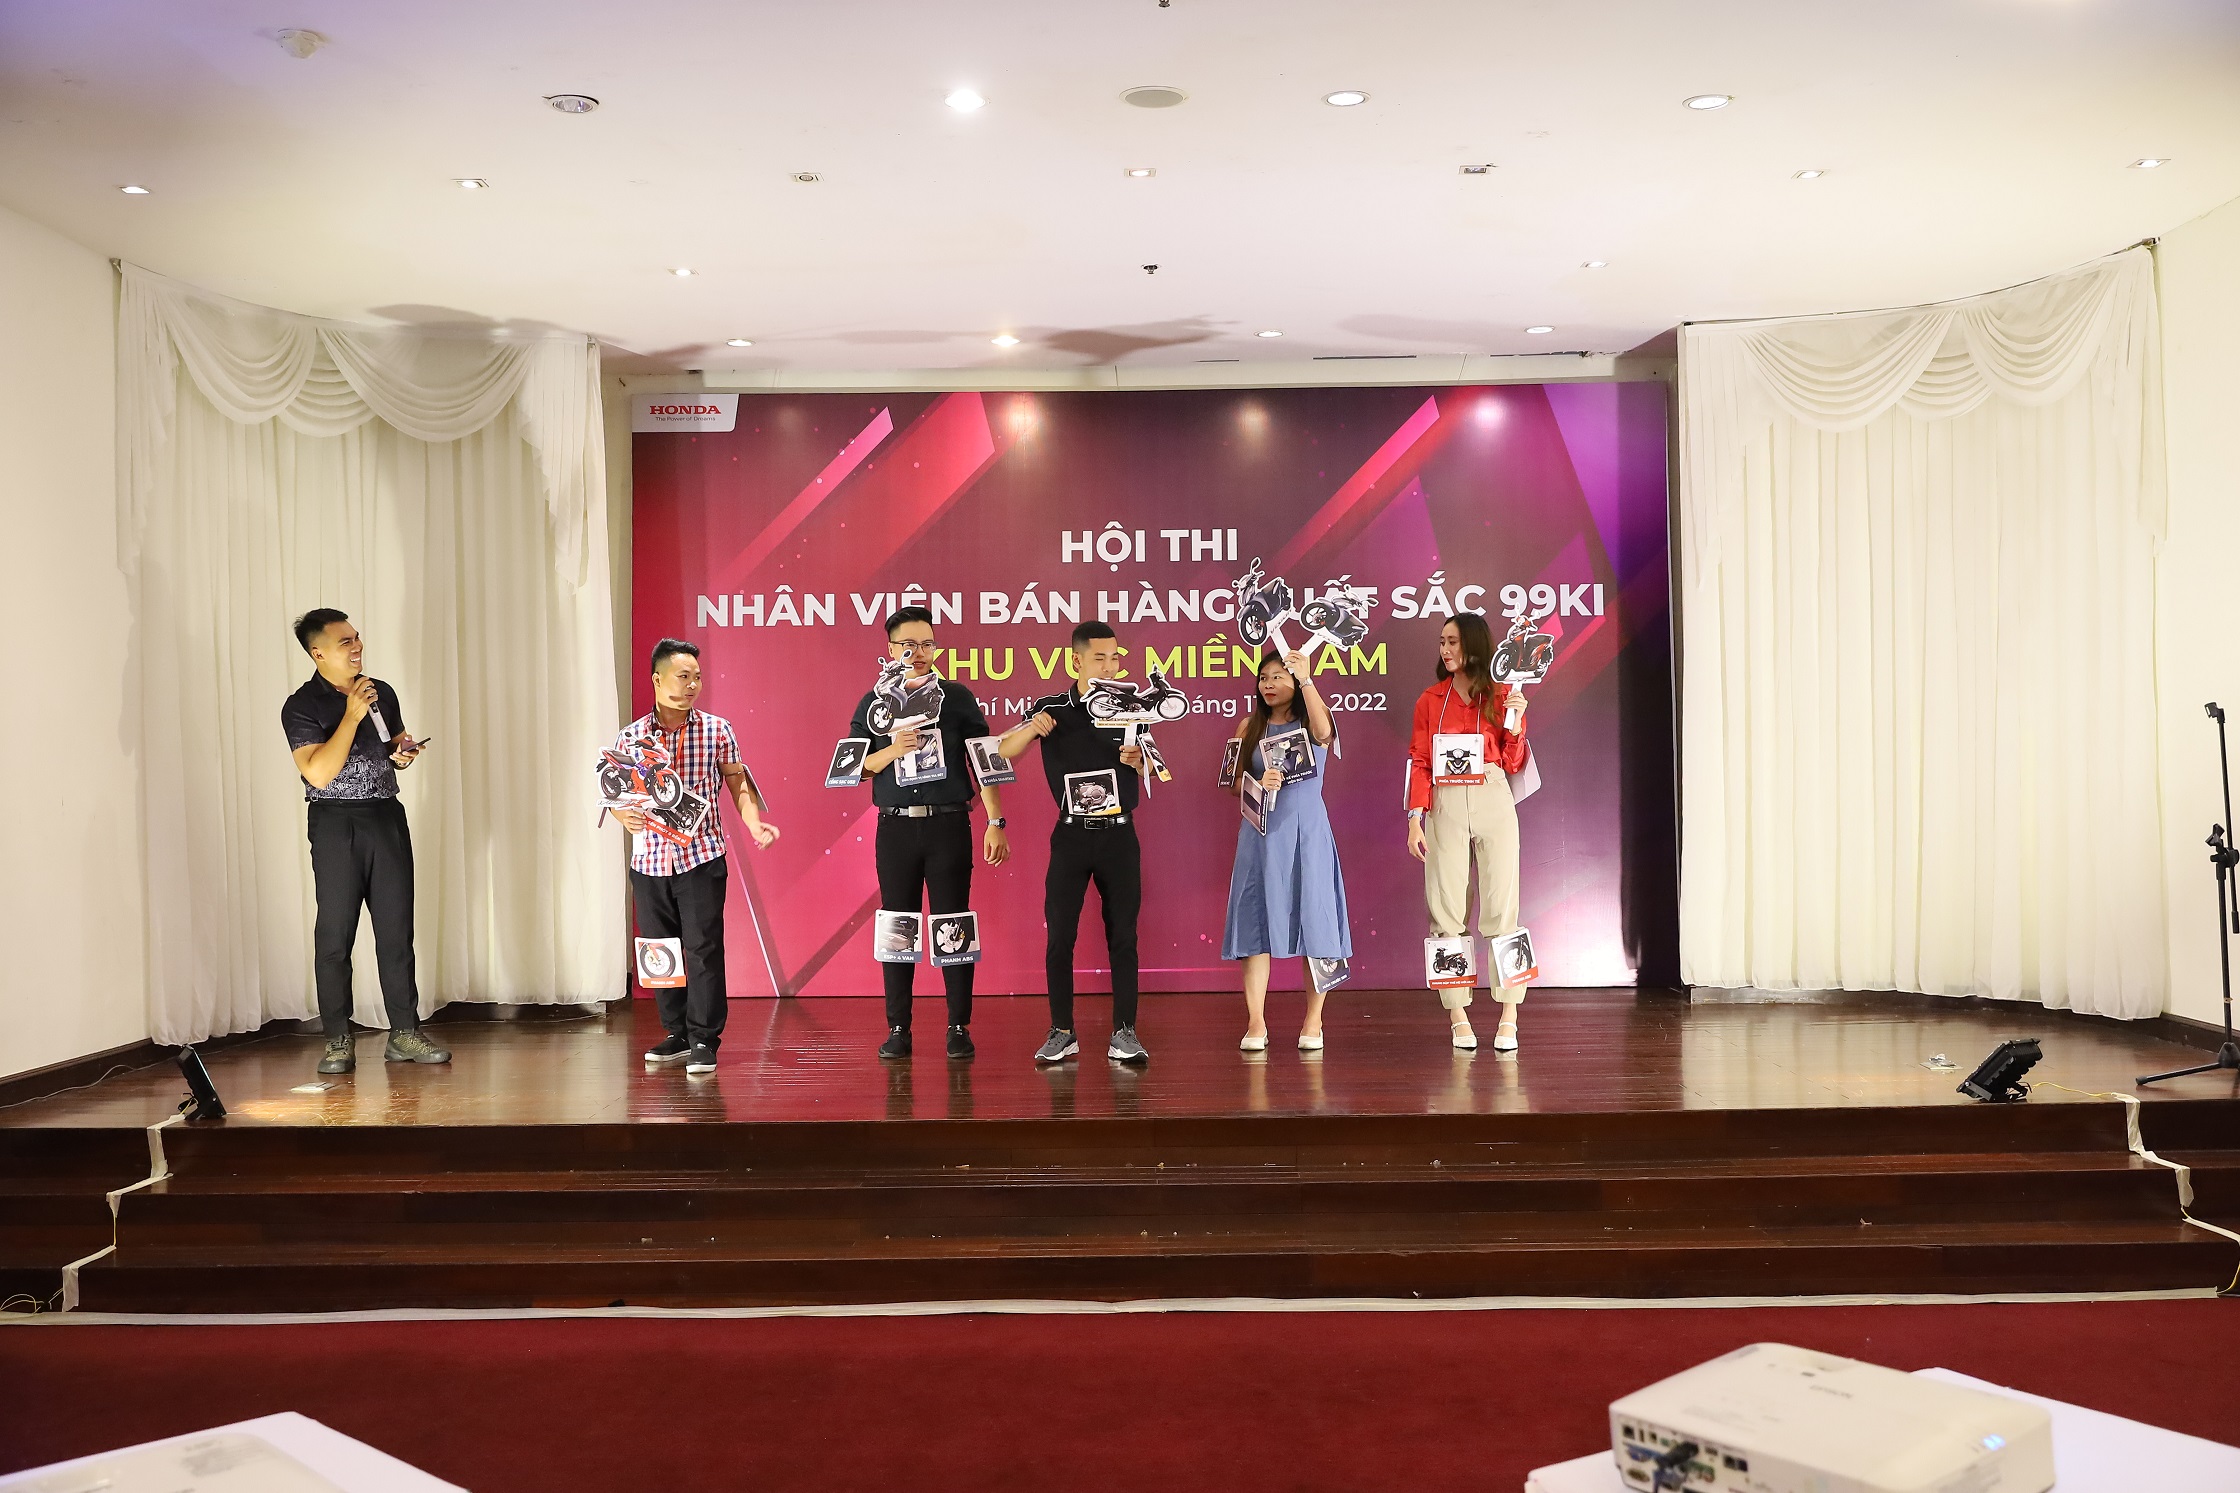 Sôi động vòng thi khu vực hội thi “Nhân viên Bán hàng xuất sắc 2022” của Honda Việt Nam honda-viet-nam-4.JPG